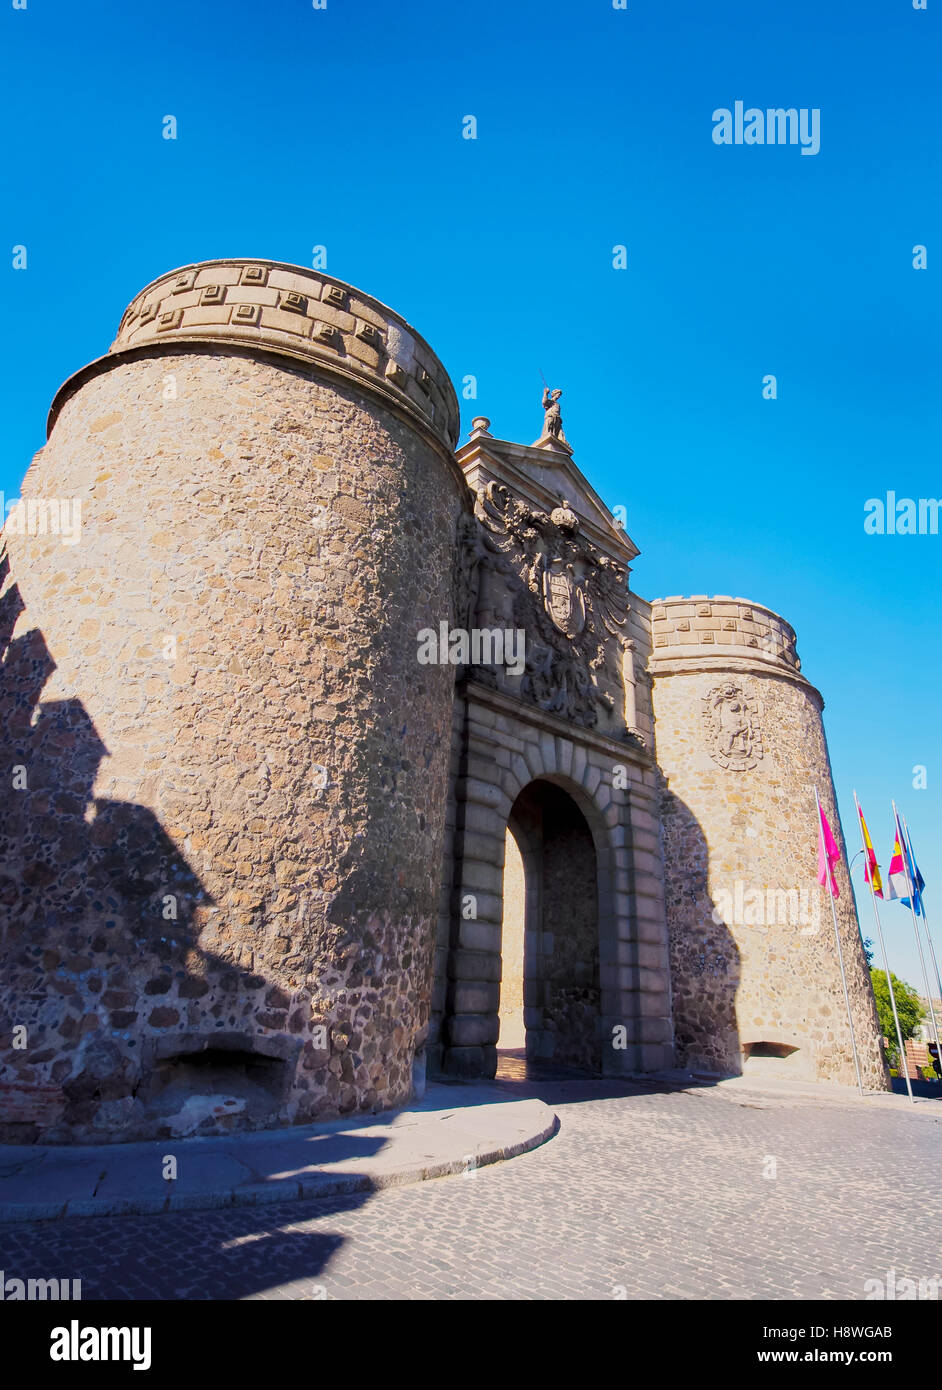 Spanien, Kastilien-La Mancha, Toledo, Blick auf das neue Bisagra-Tor. Stockfoto